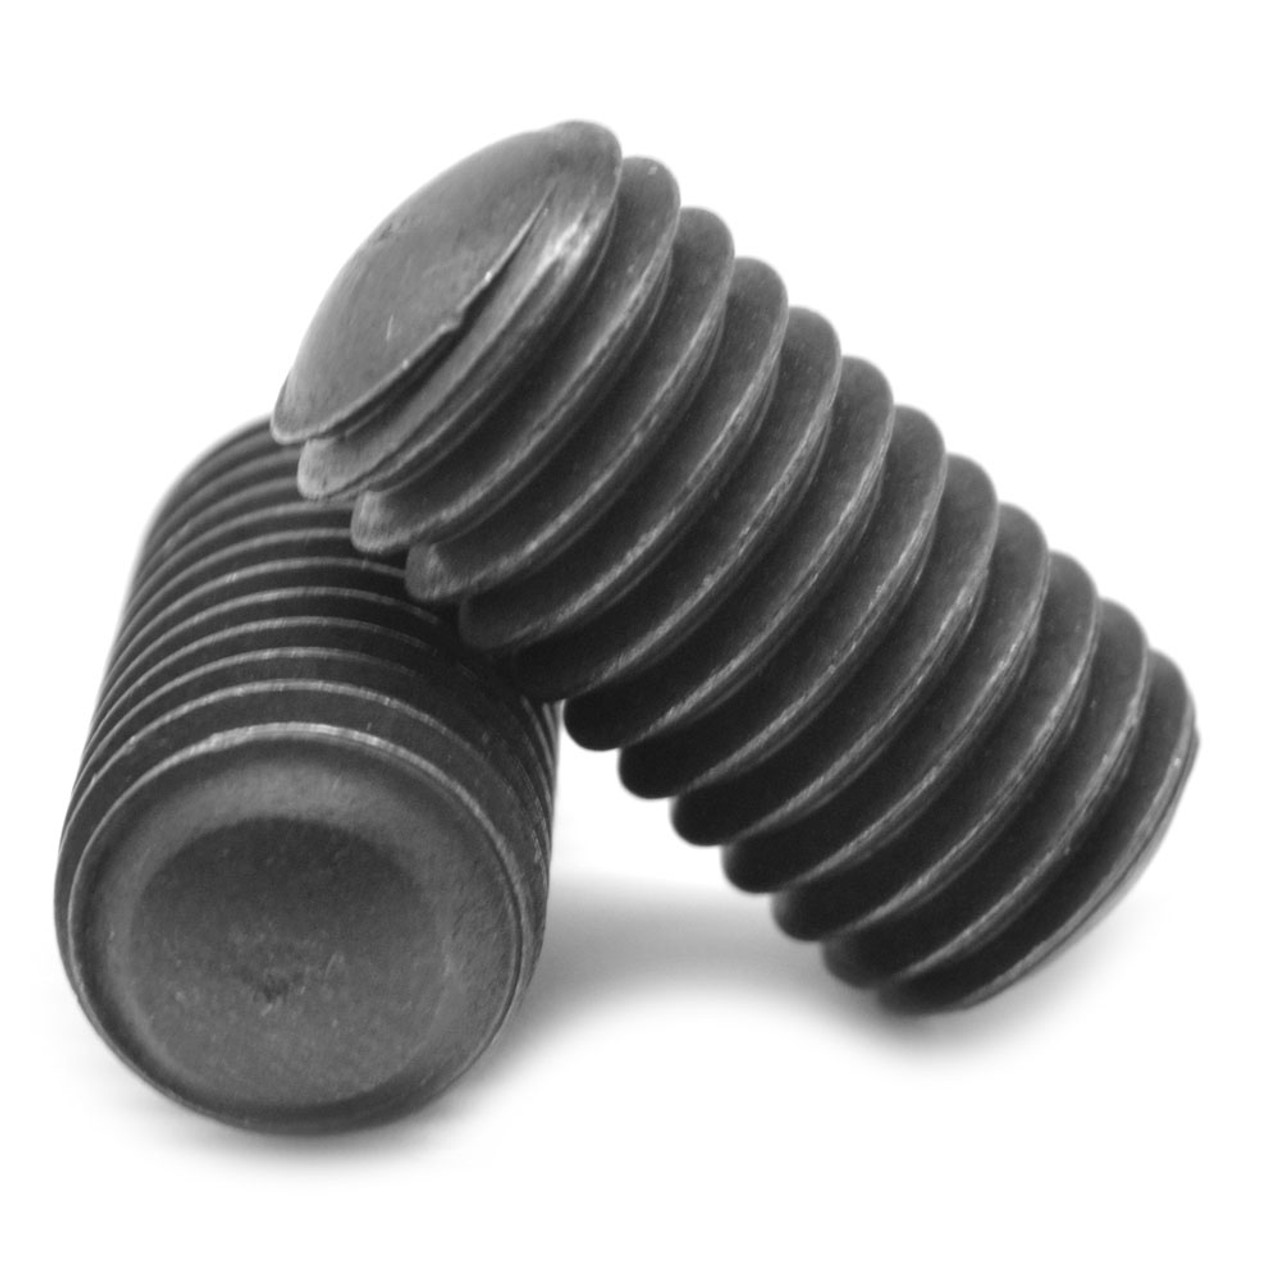 3/4"-10 x 1 1/2" Coarse Thread Socket Set Screw Oval Point Alloy Steel Black Oxide